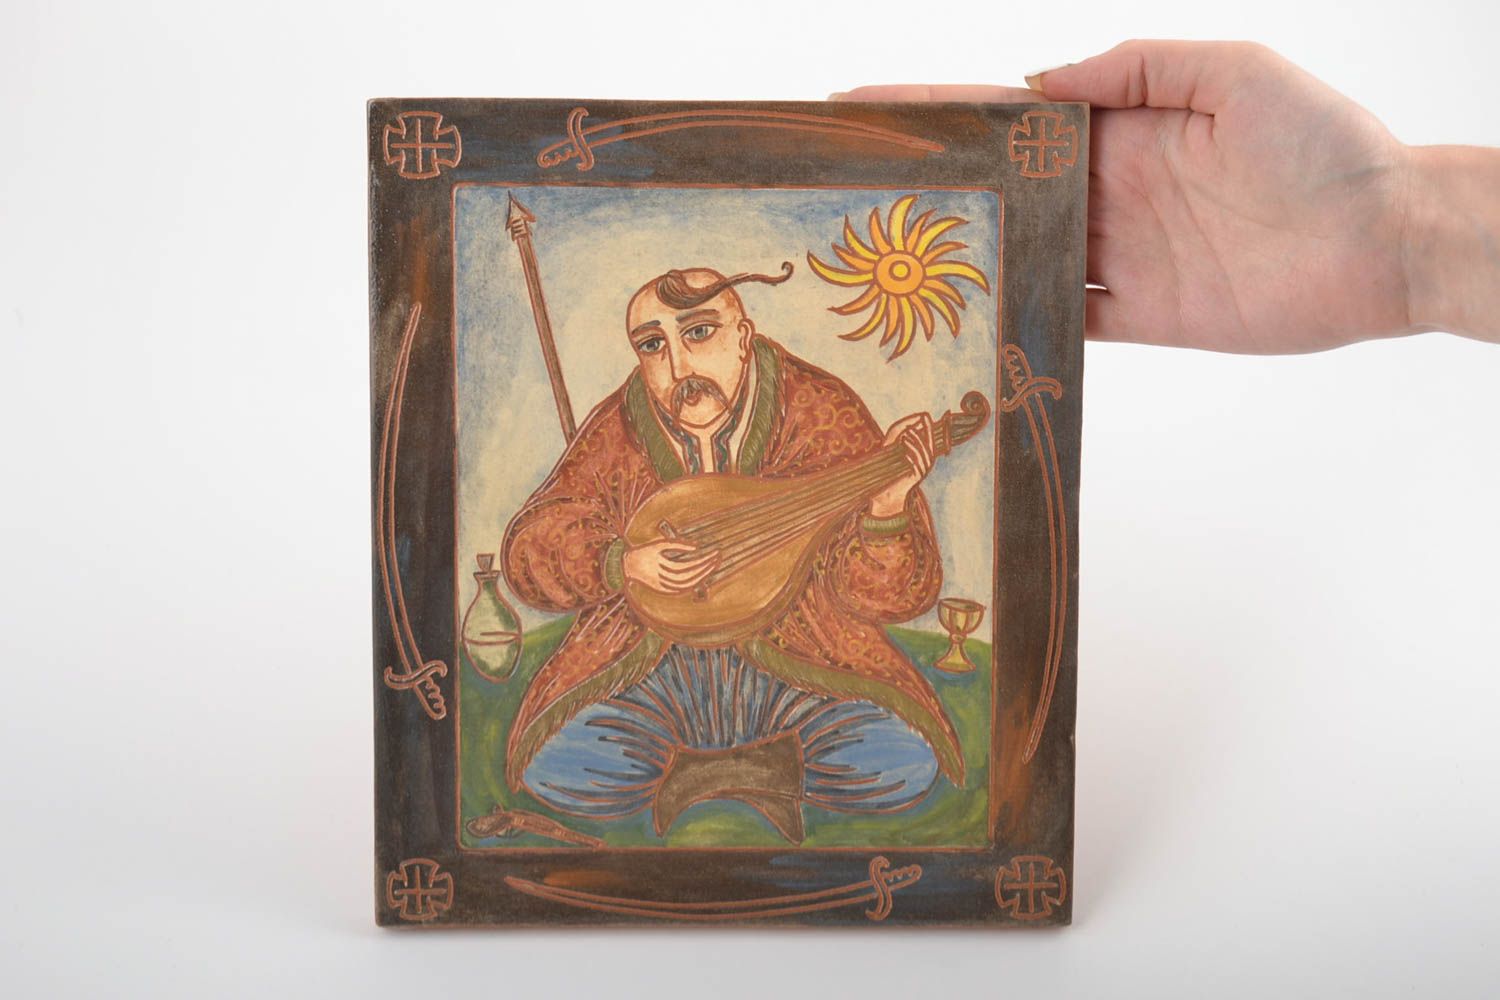 Керамическая плитка расписанная ангобами хэнд мэйд с изображением казака Мамая фото 2